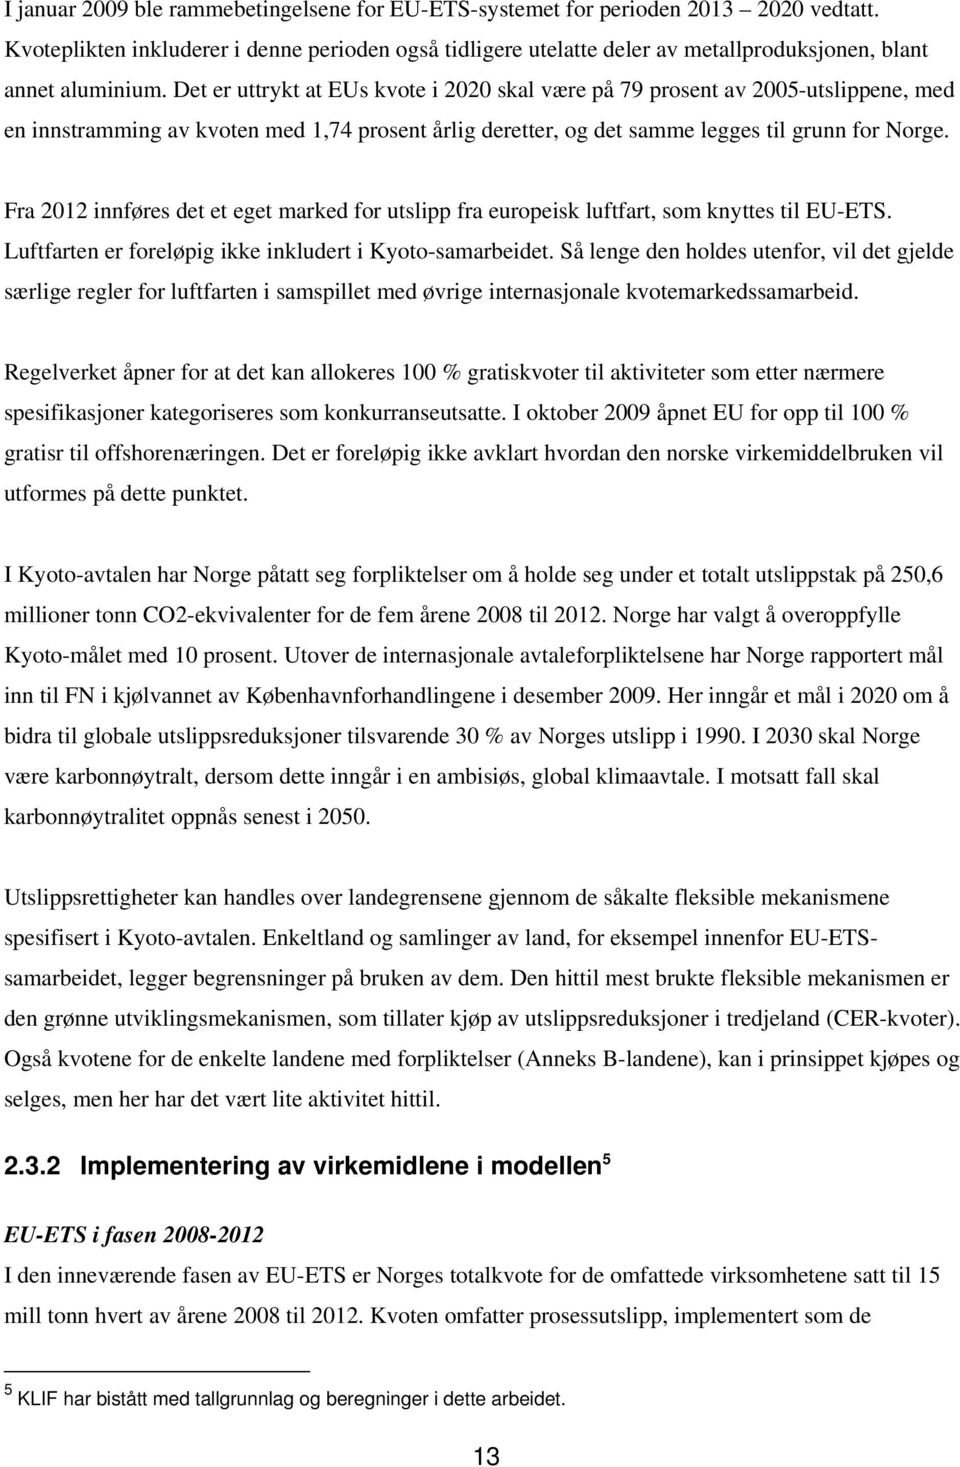 Det er uttrykt at EUs kvote i 2020 skal være på 79 prosent av 2005-utslippene, med en innstramming av kvoten med 1,74 prosent årlig deretter, og det samme legges til grunn for Norge.